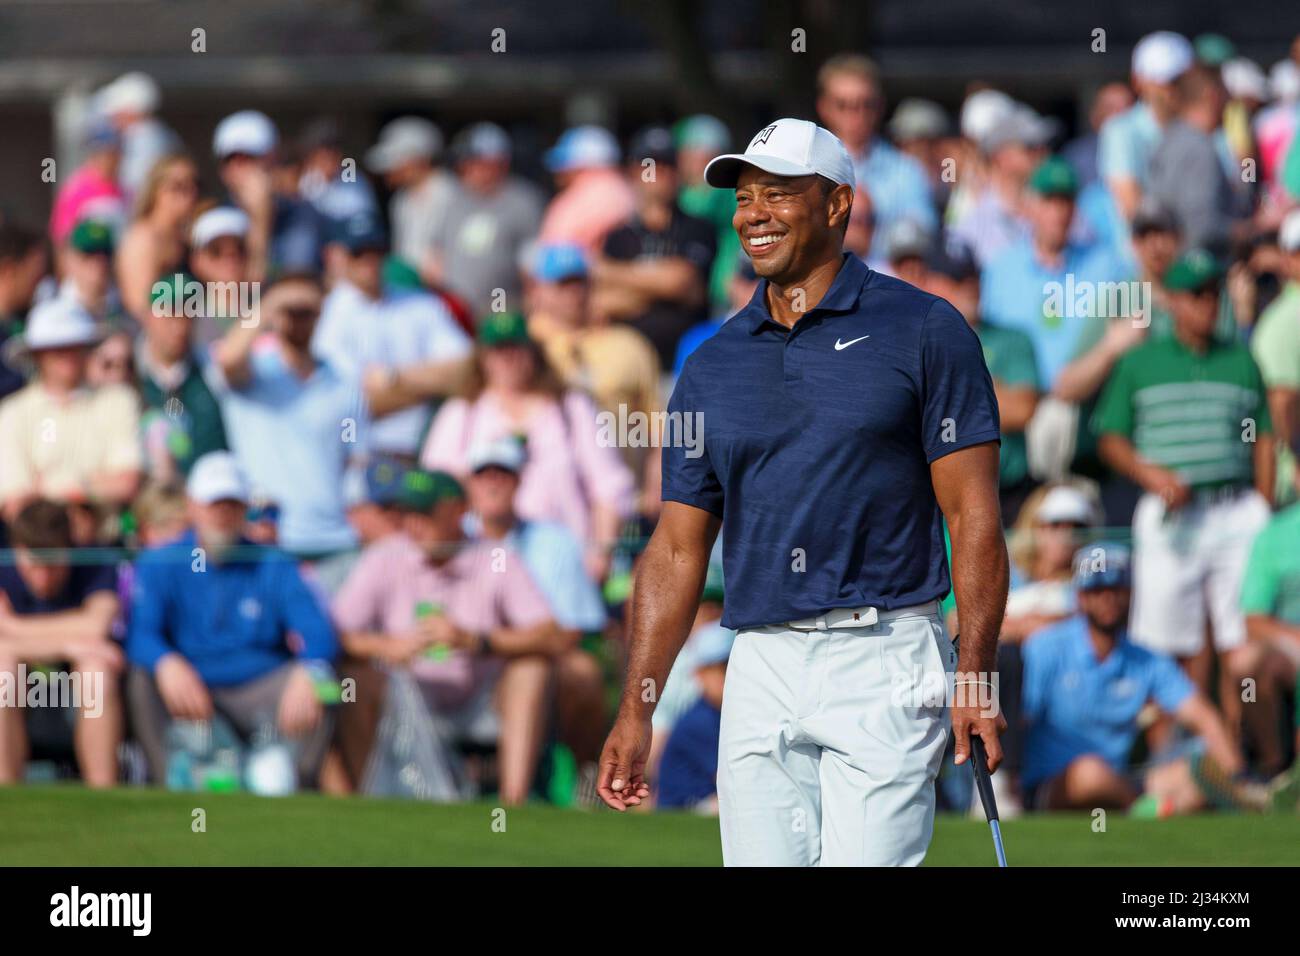 Augusta National Golf Club. 04th avril 2022. Tiger Woods sourit lors d'une partie d'entraînement du tournoi de golf Masters au club de golf national d'Augusta. Ryan Hunt/CSM/Alamy Live News Banque D'Images